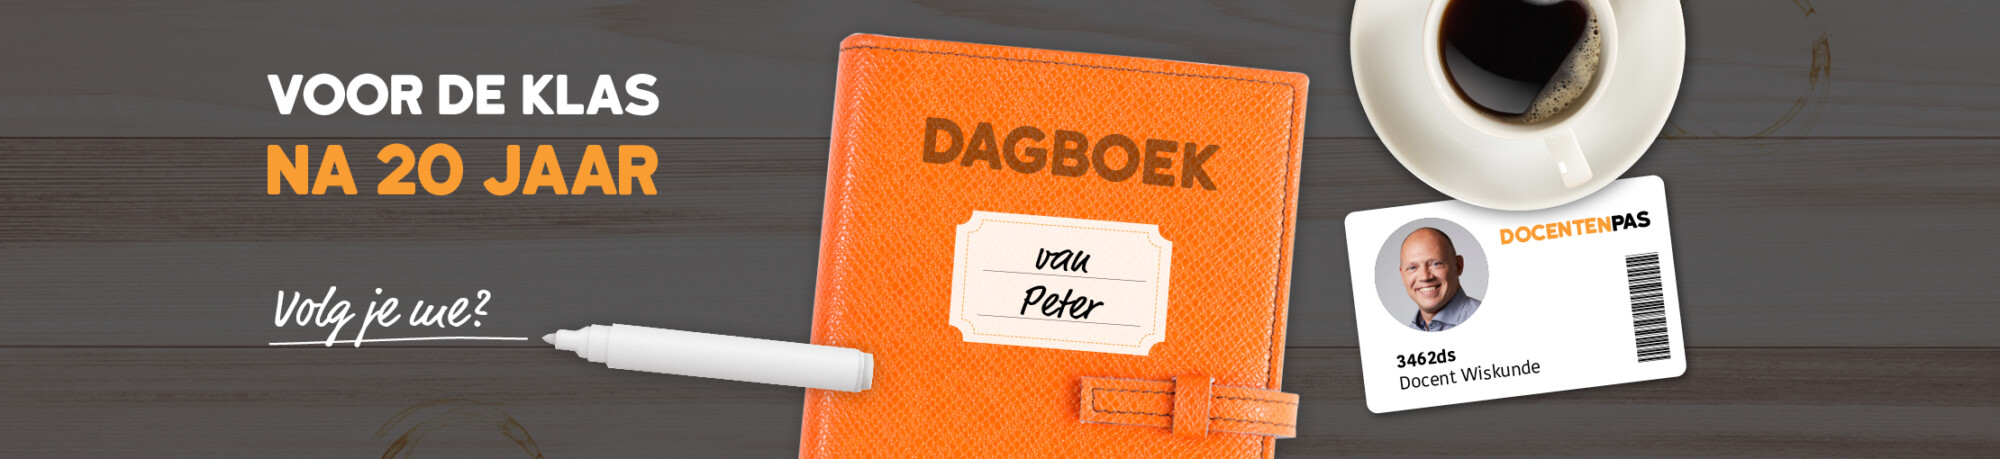 Dagboek van Peter